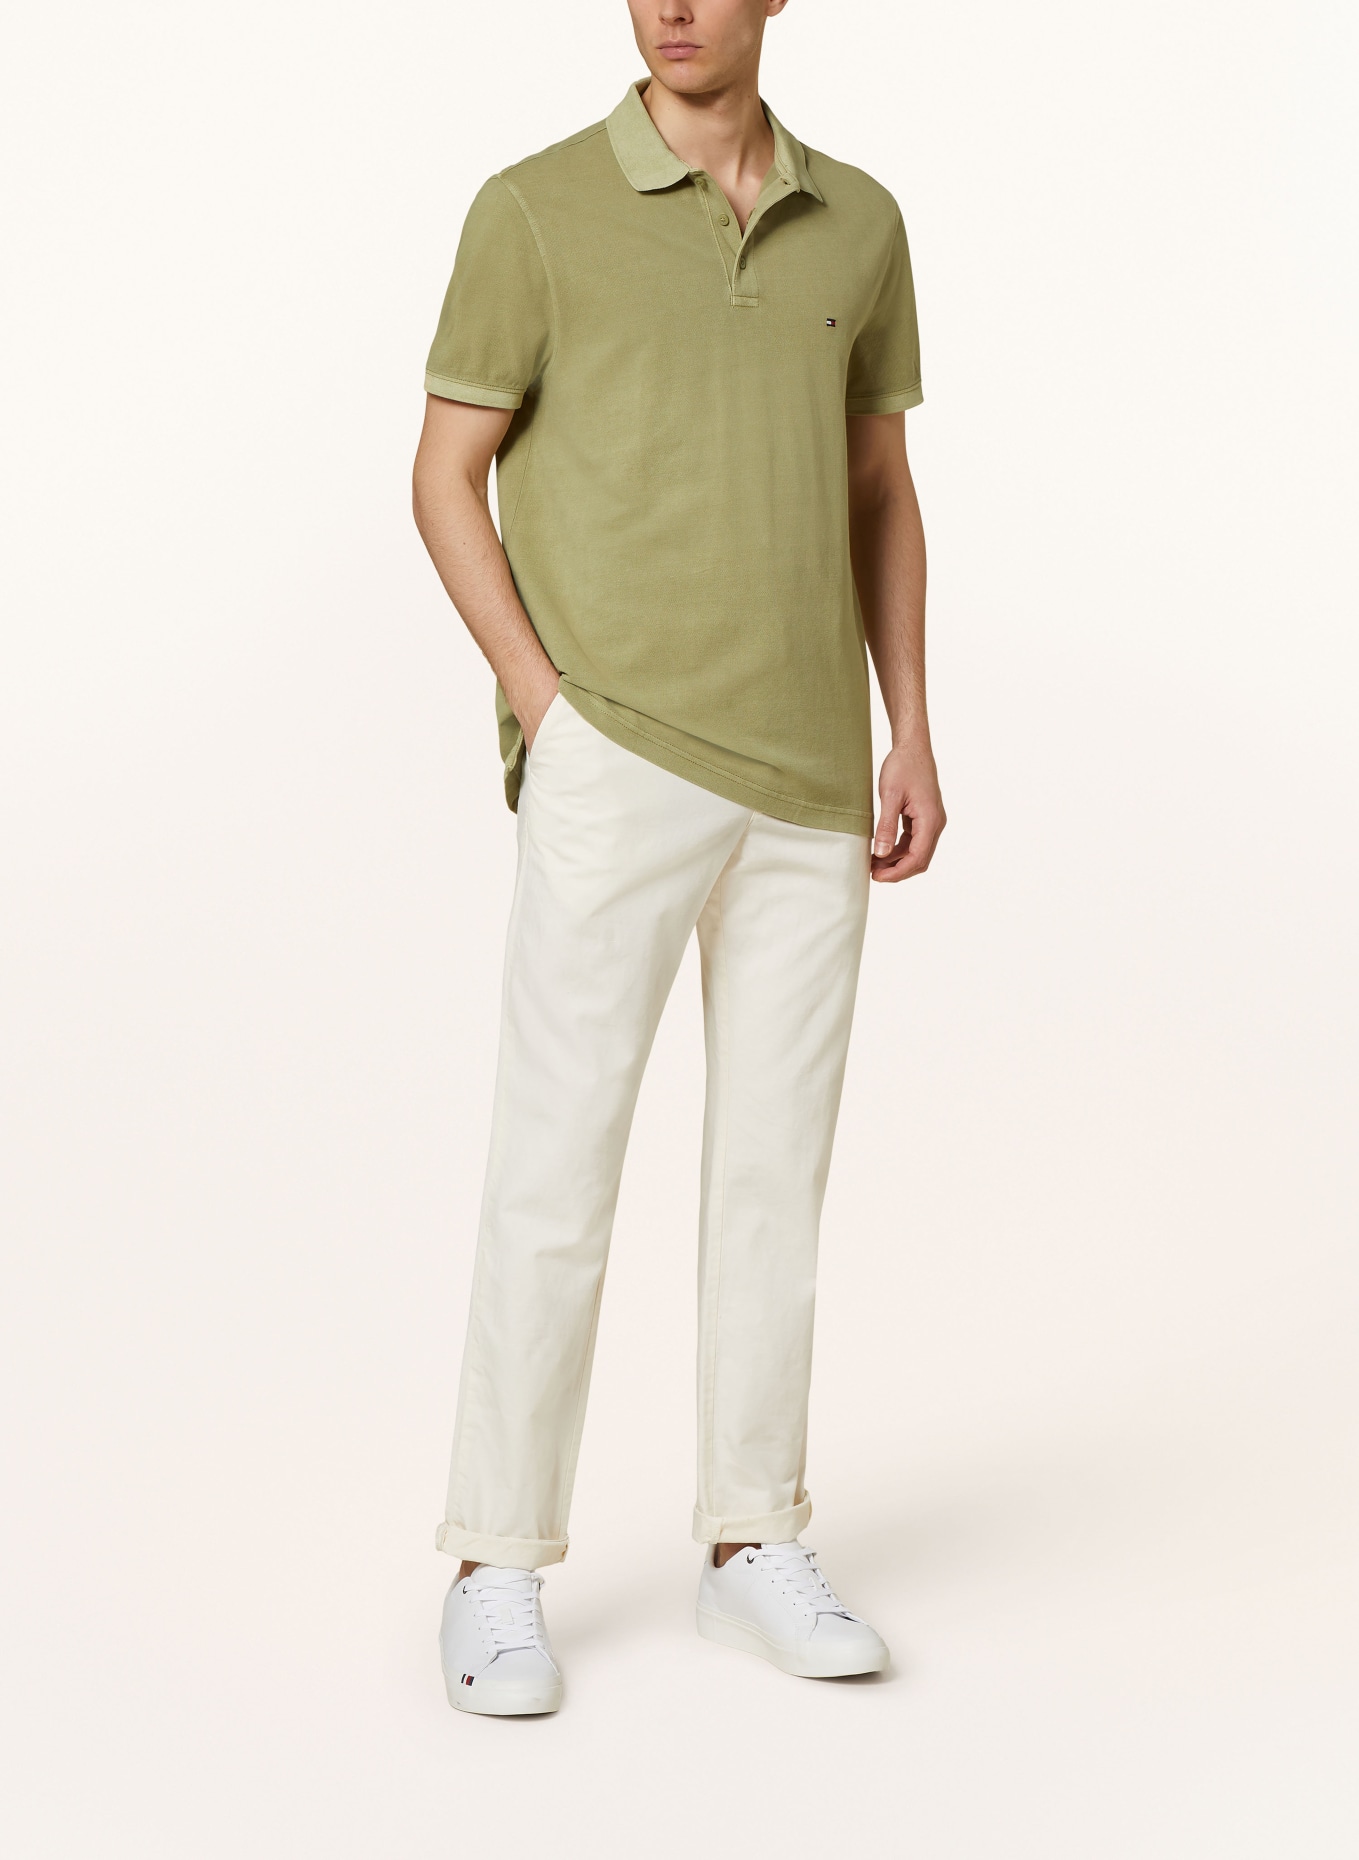 TOMMY HILFIGER Piqué polo shirt regular fit, Color: OLIVE (Image 2)